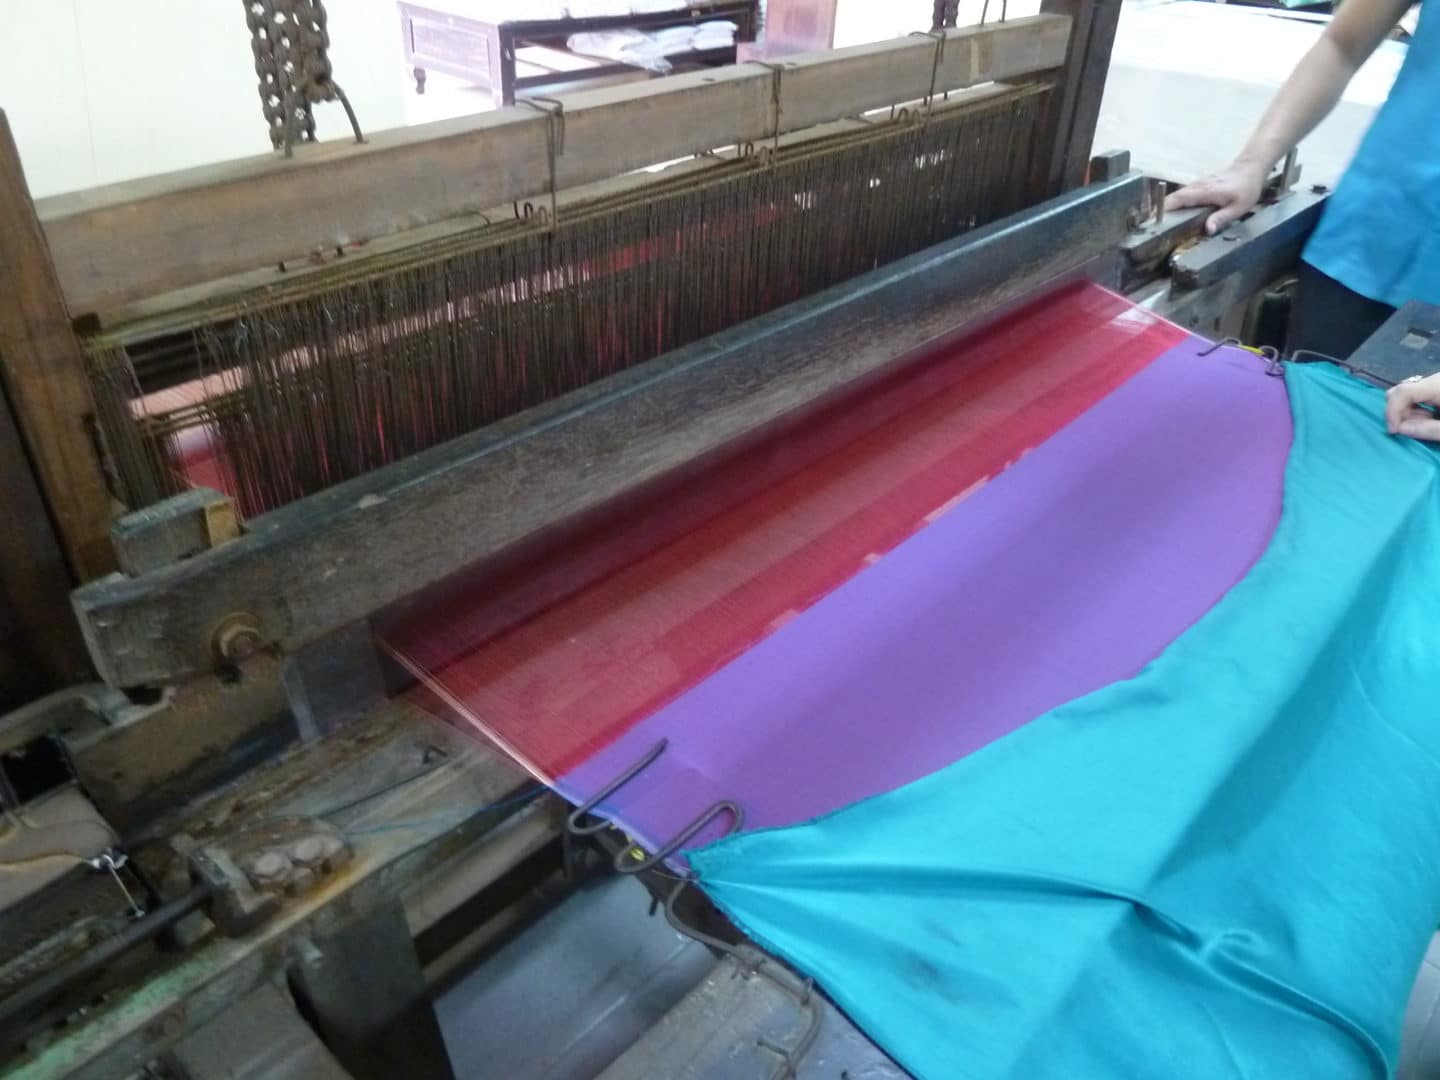 Making silk in Hoi An